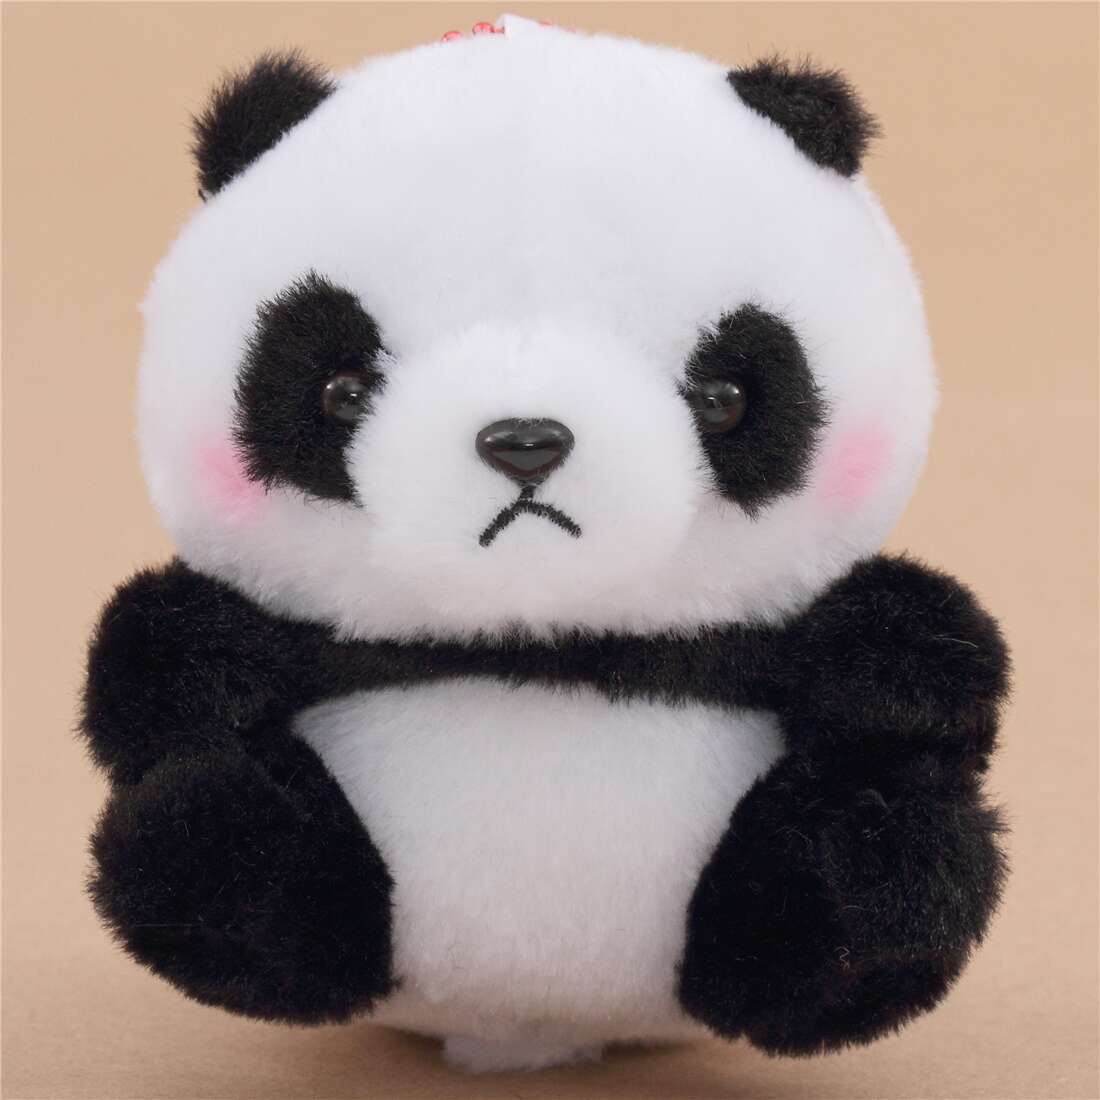 black panda toy